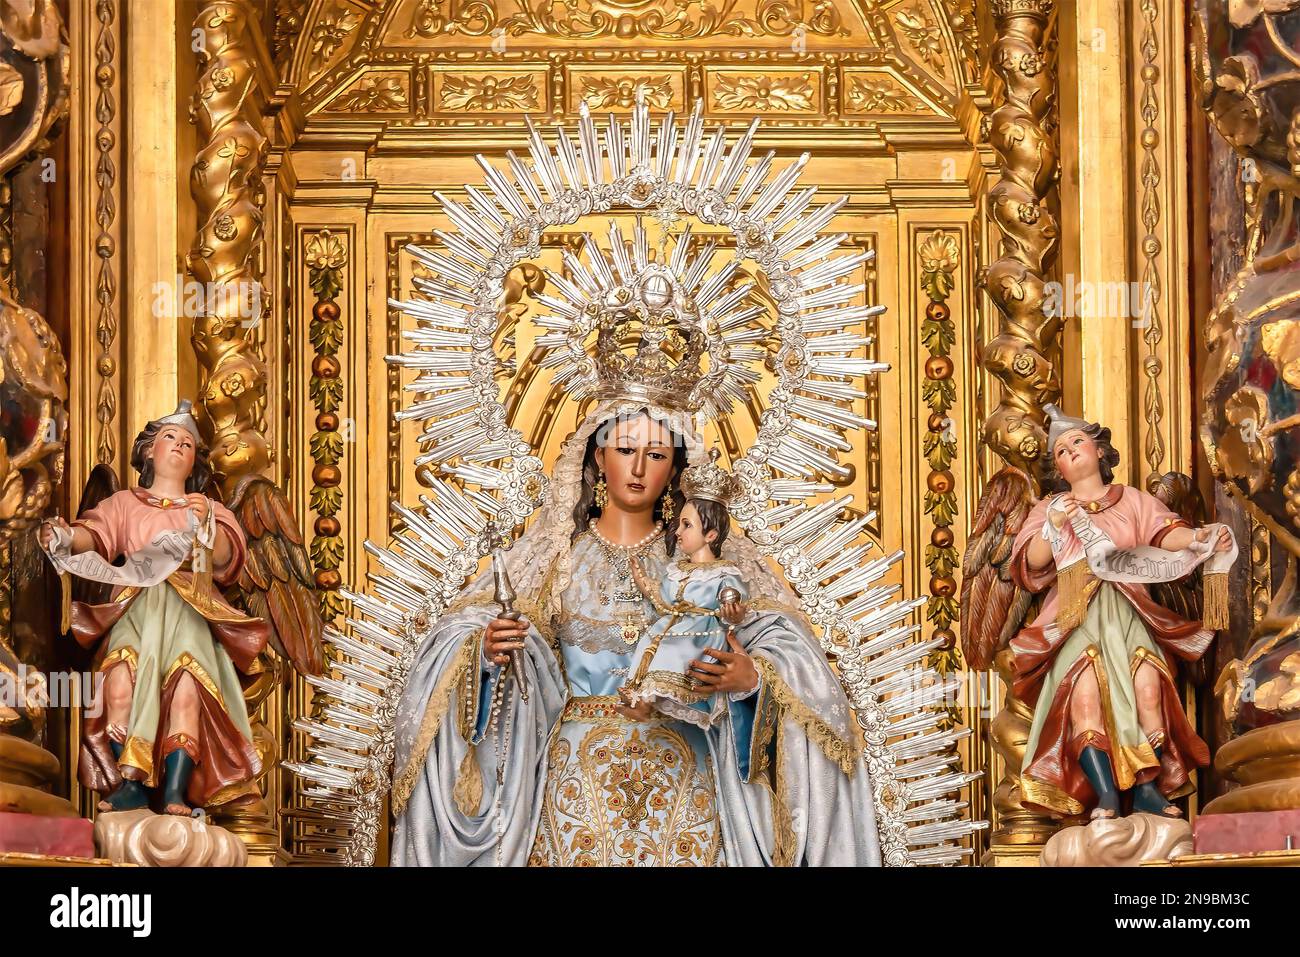 Bild von Madre de Dios del Rosario (Mutter Gottes des Rosenkranzes), Patrona de Capataces y Costaleros (Schutzpatron der Vorarbeiter und Träger) im Inneren des Pa Stockfoto